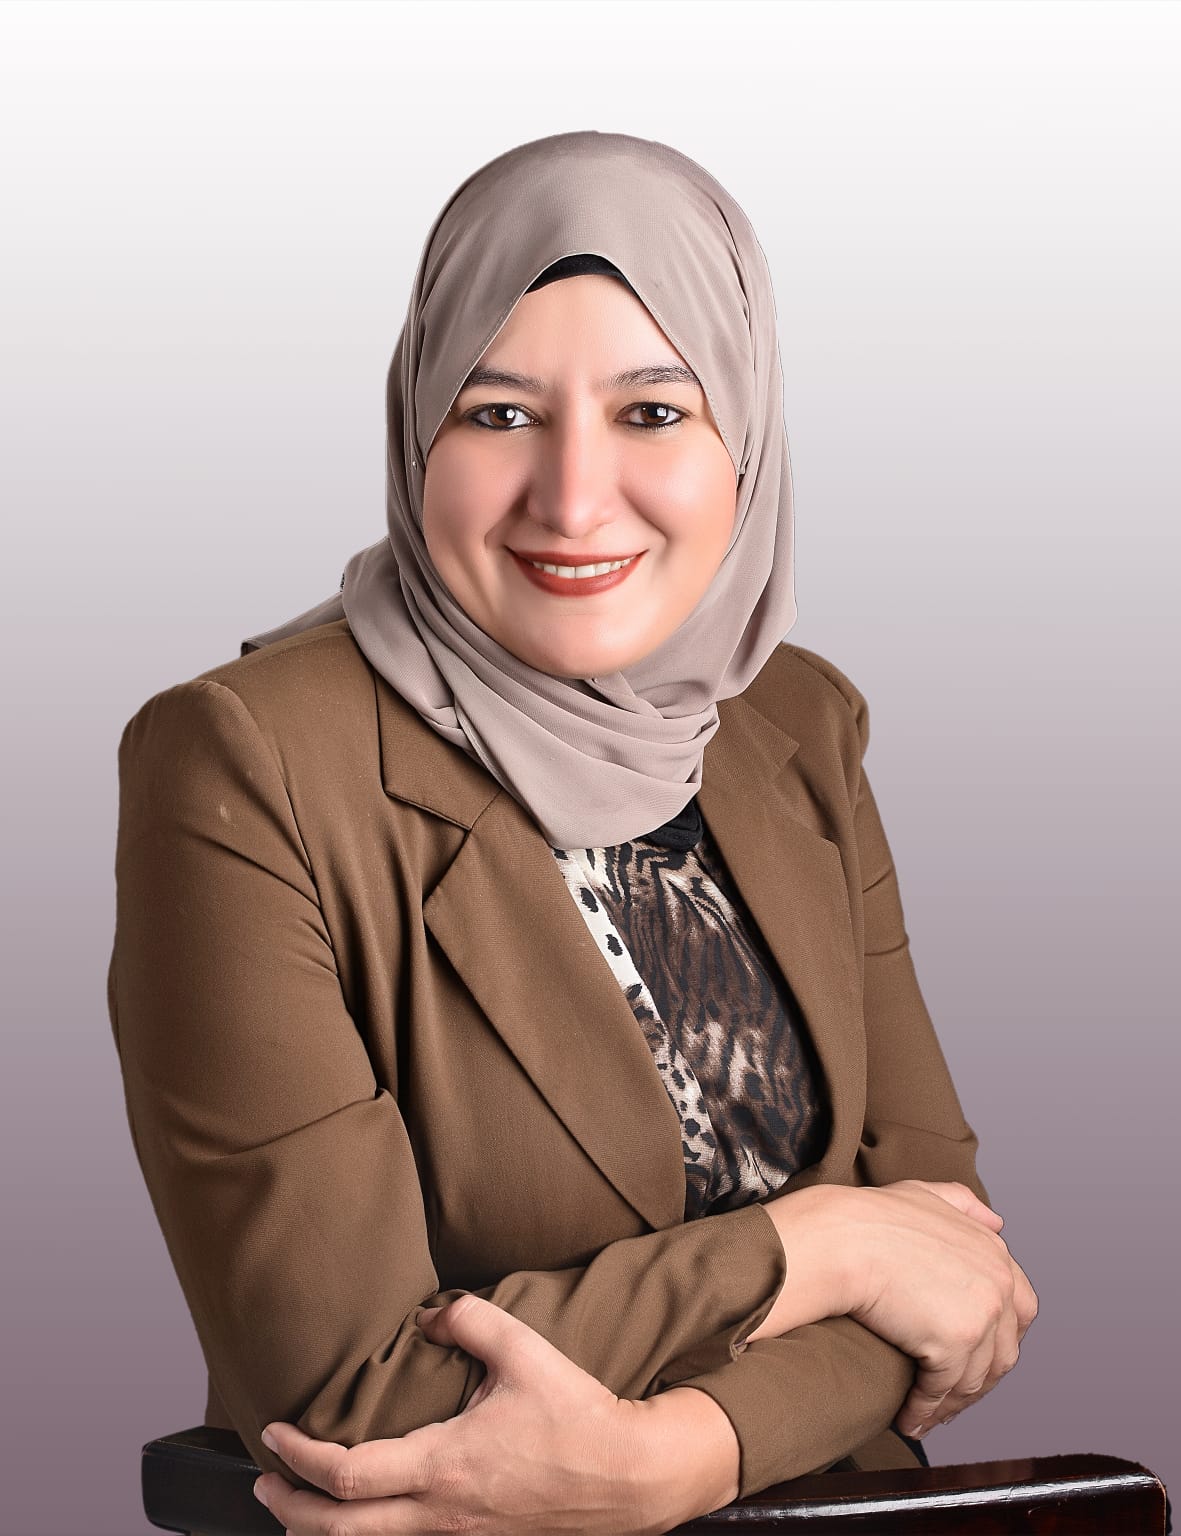 دكتور شيماء الشبراوي